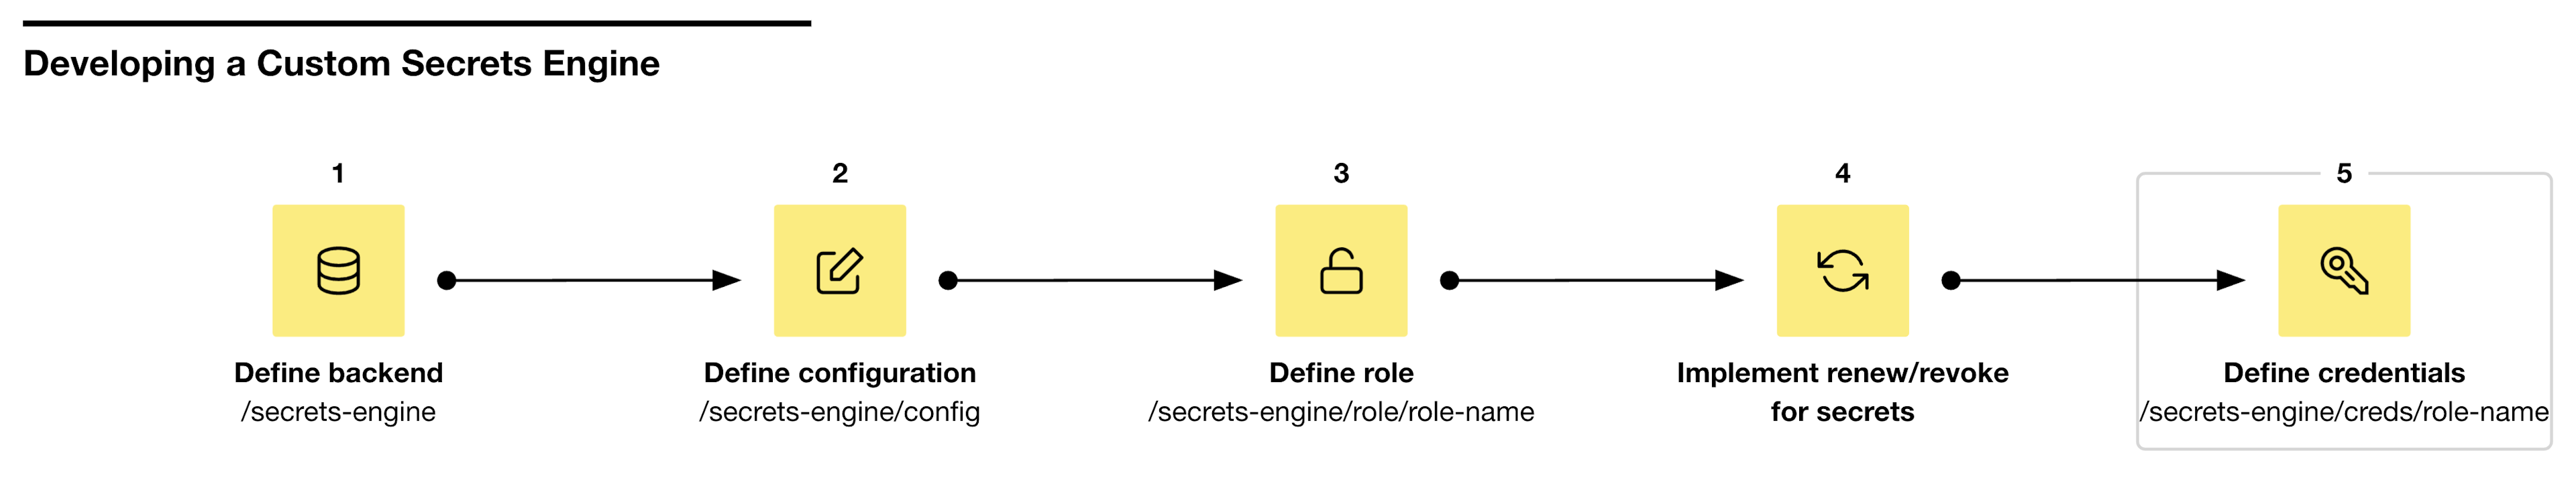 Step 5 creates secrets engine credentials at /secrets-engine/creds